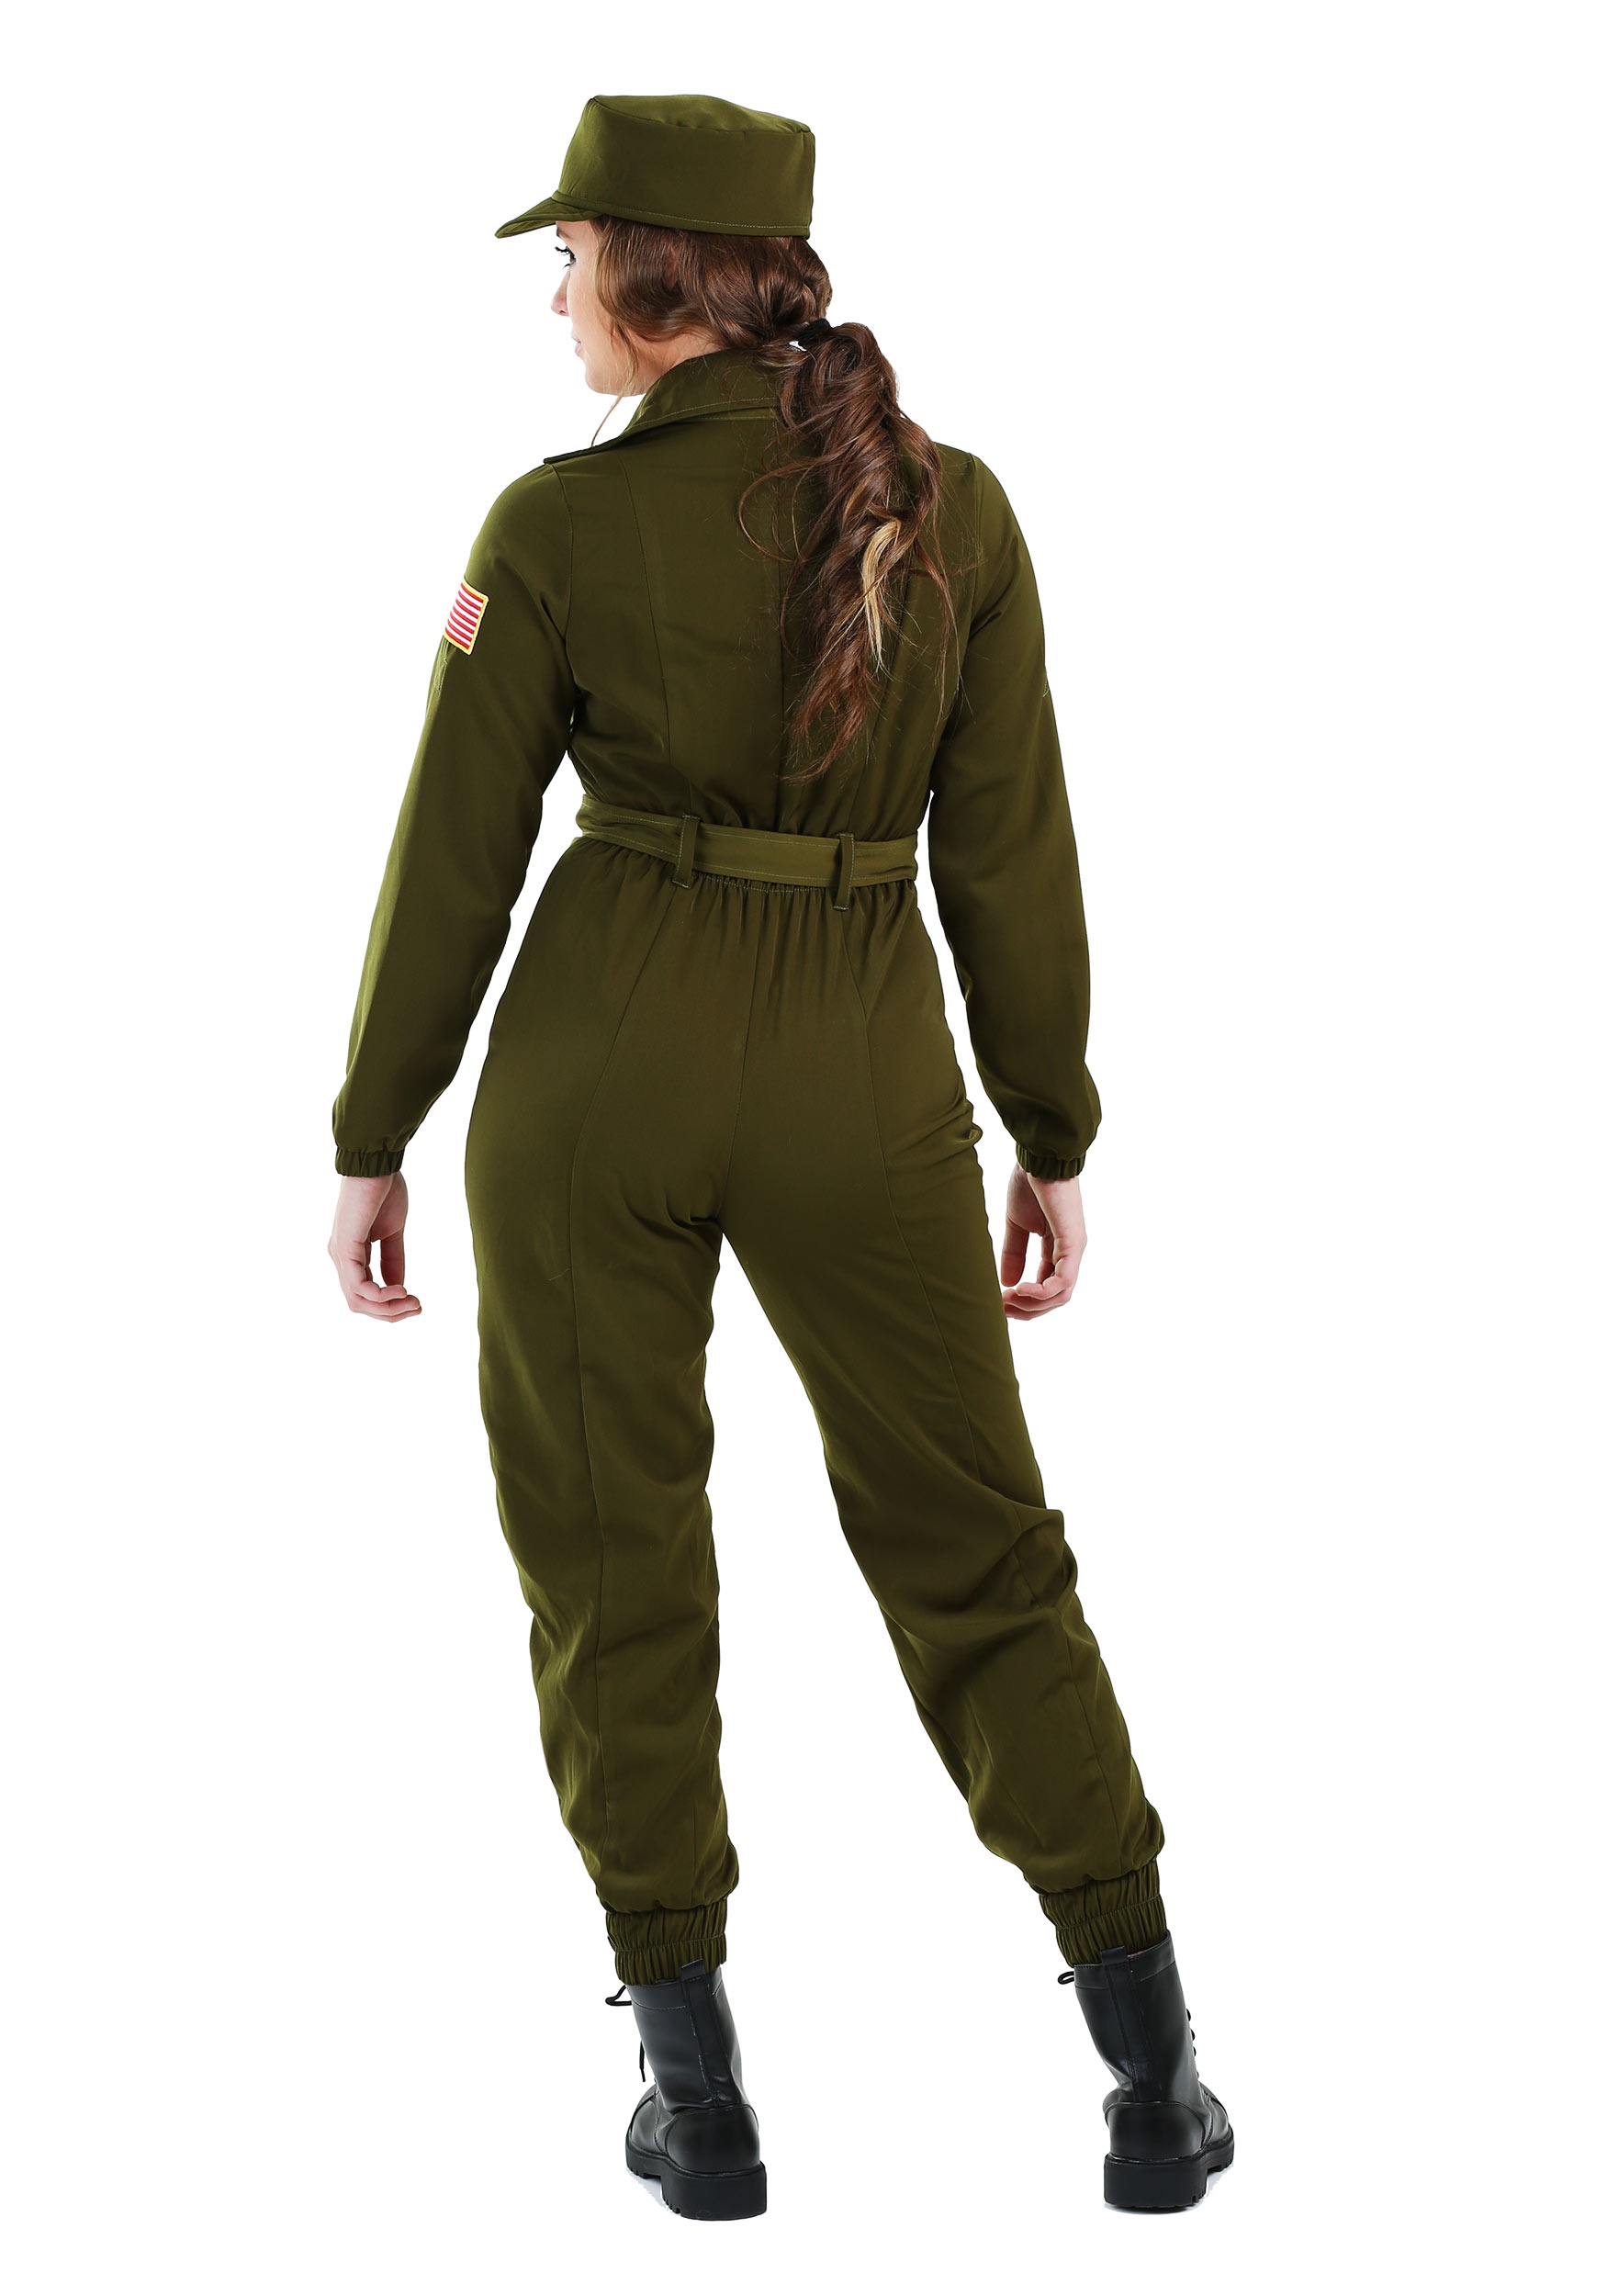 Army Flightsuit Women's Fancy Dress Costume , Army Fancy Dress Costumes For Women